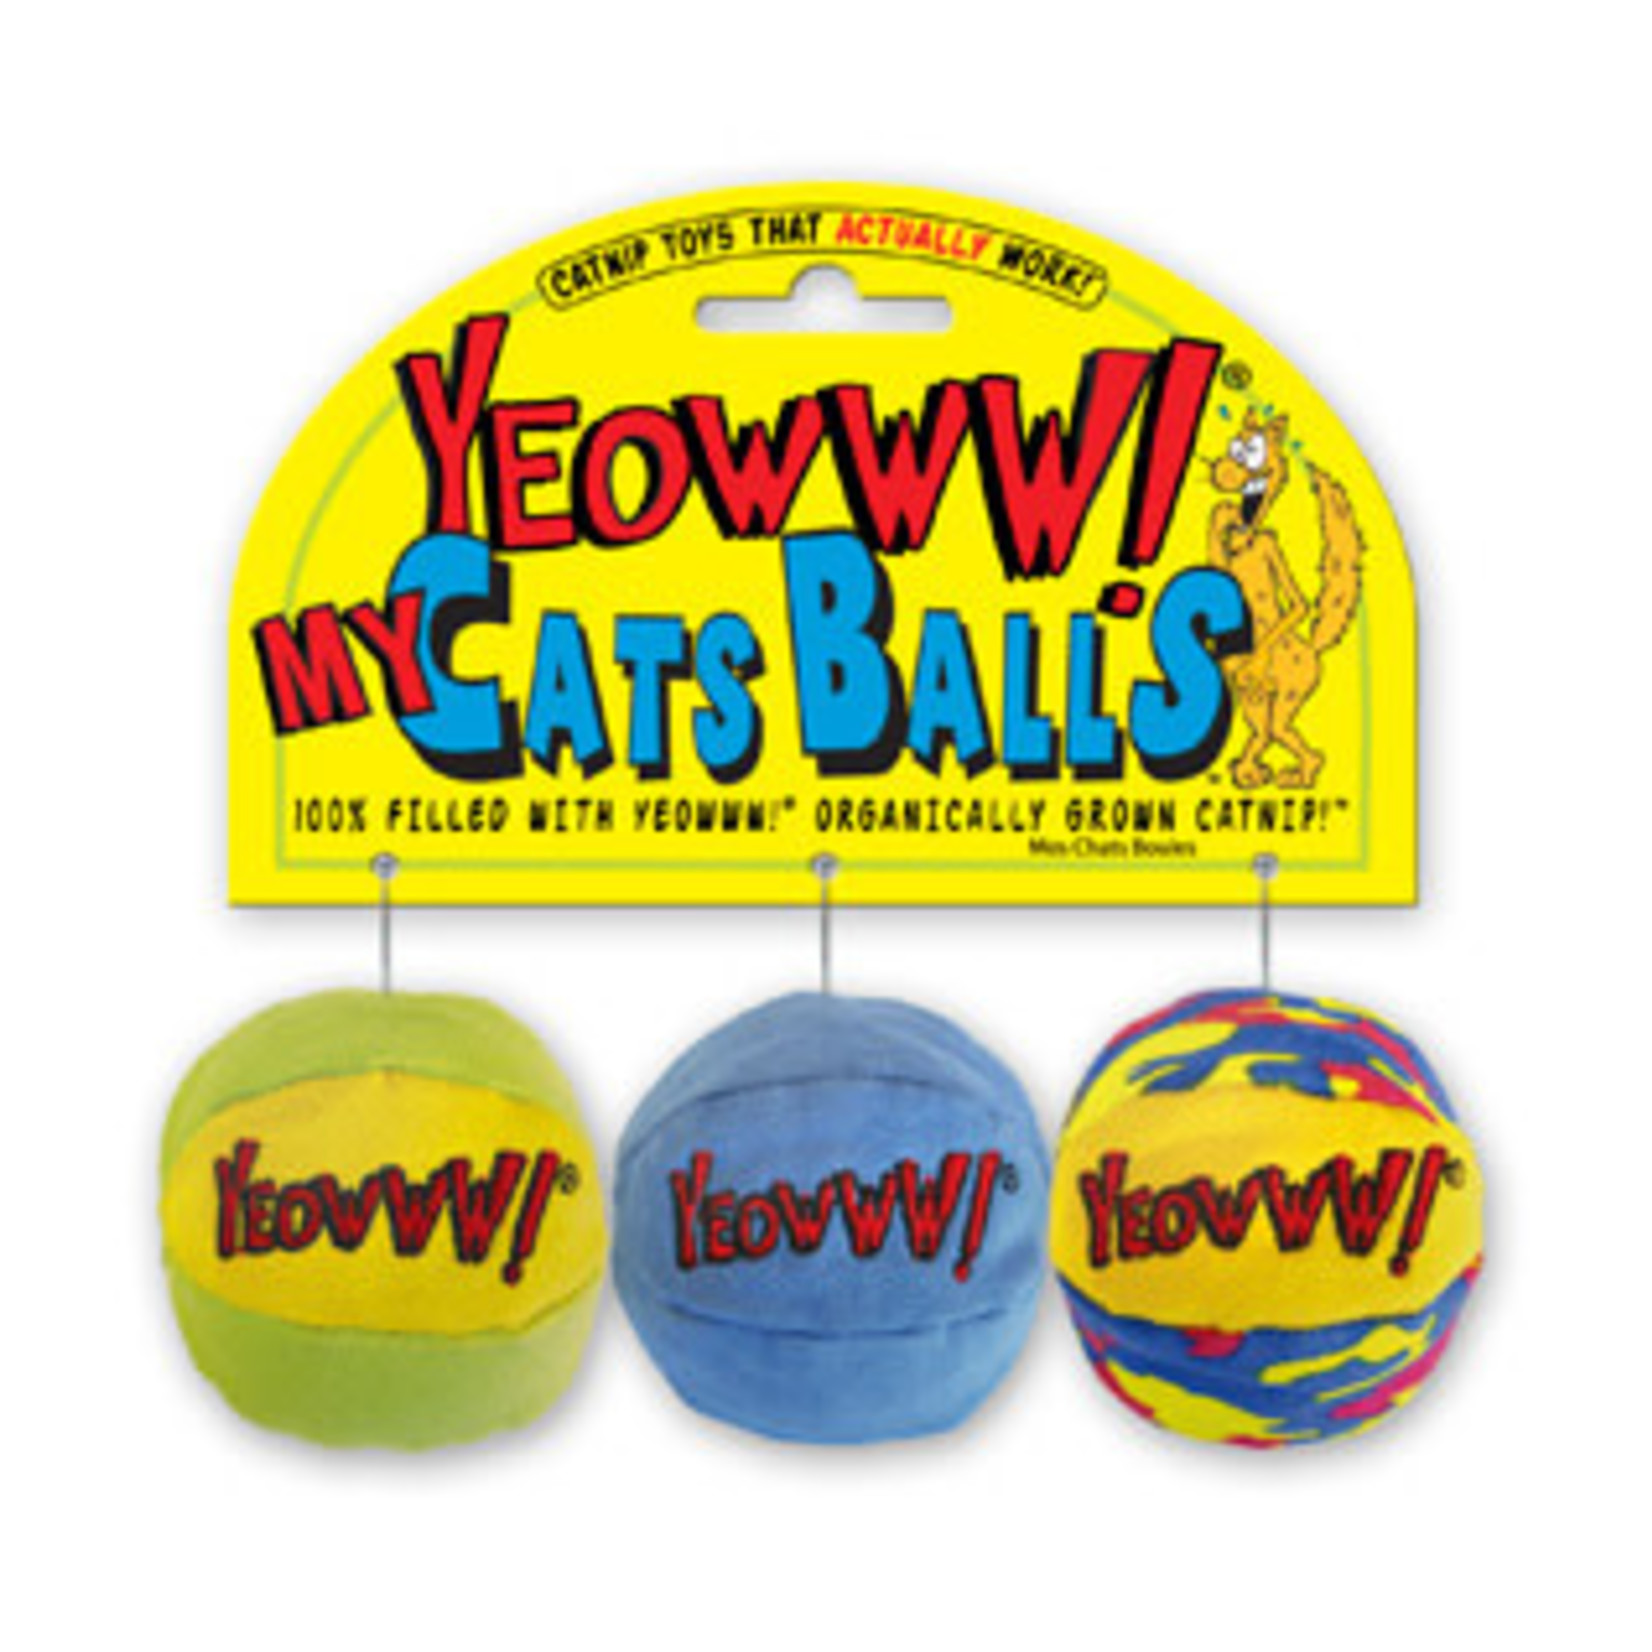 Rosewood Yeowww! Catnip Cat Balls Cat Toy, 3 pack